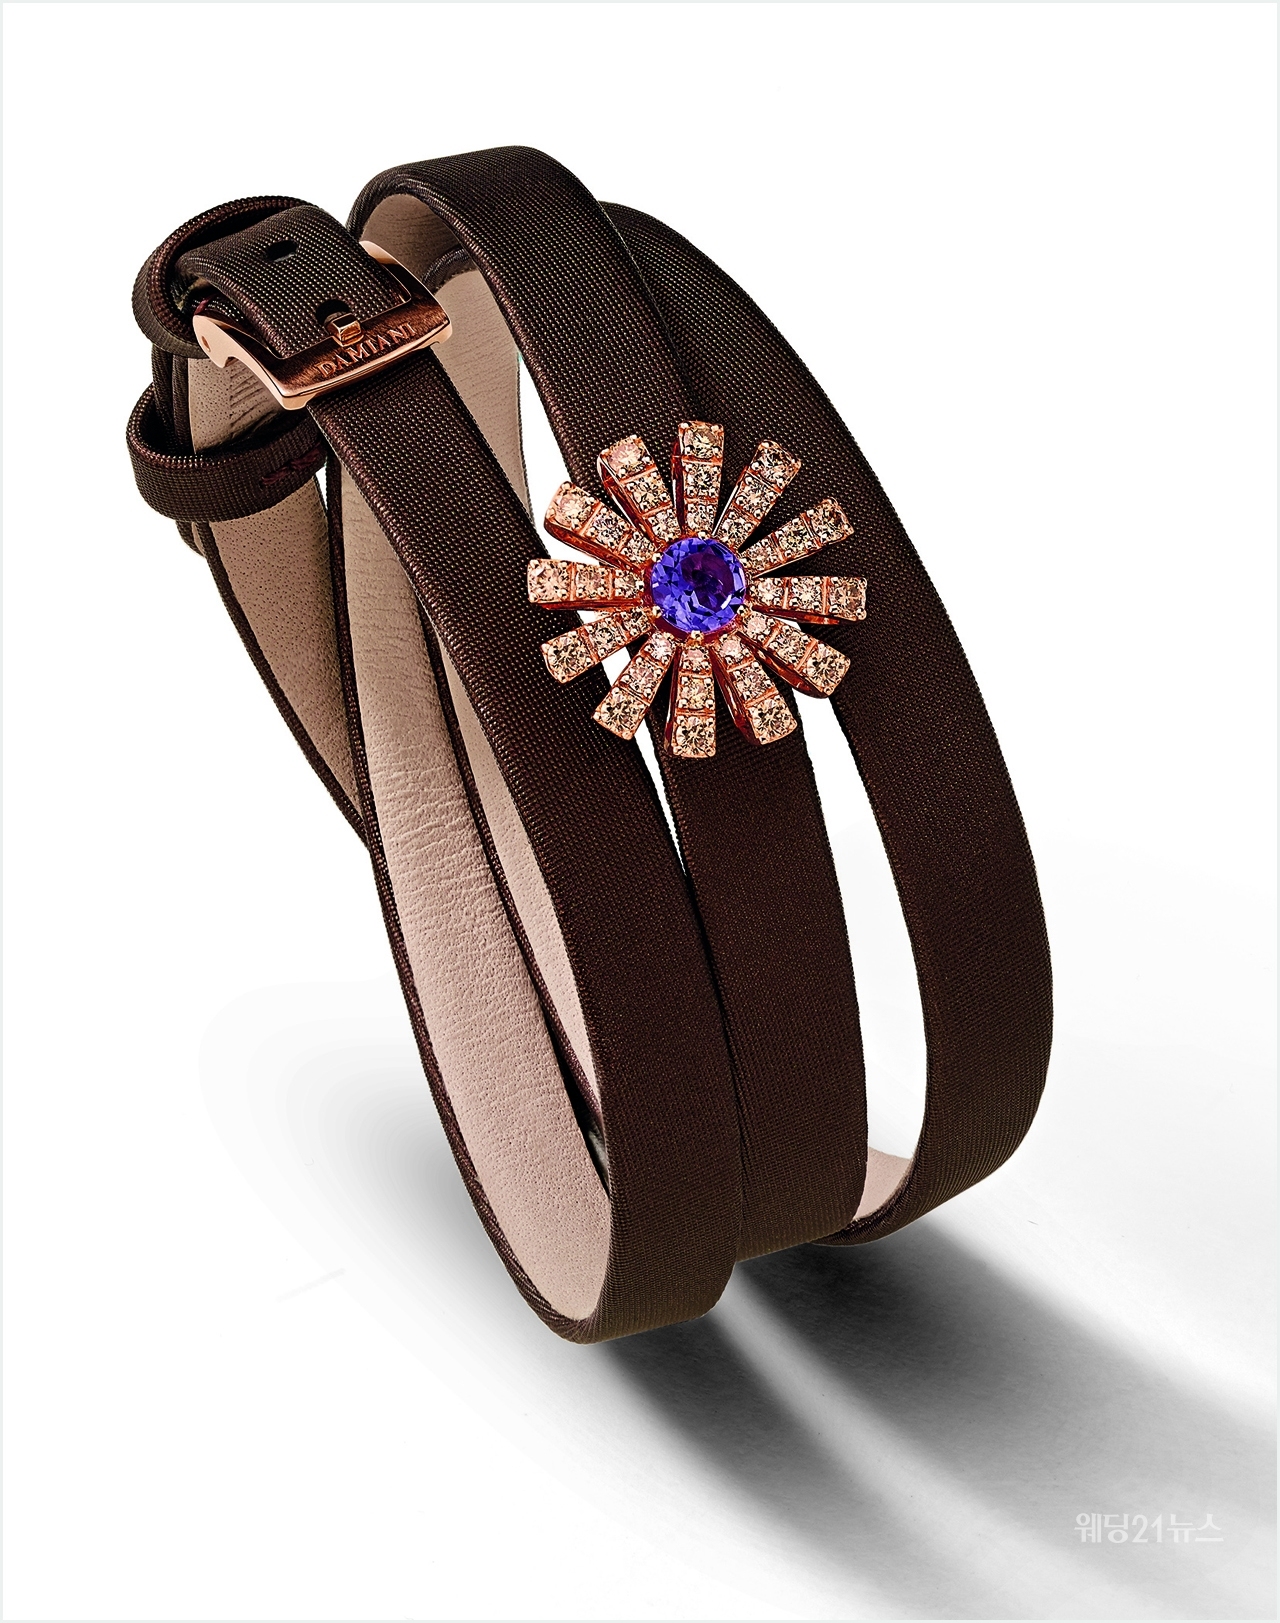 사진 : 다미아니, 개성있는 스타일의 브레이슬릿. Margherita bracelet in pink gold, brown diamonds and amethyst with satin